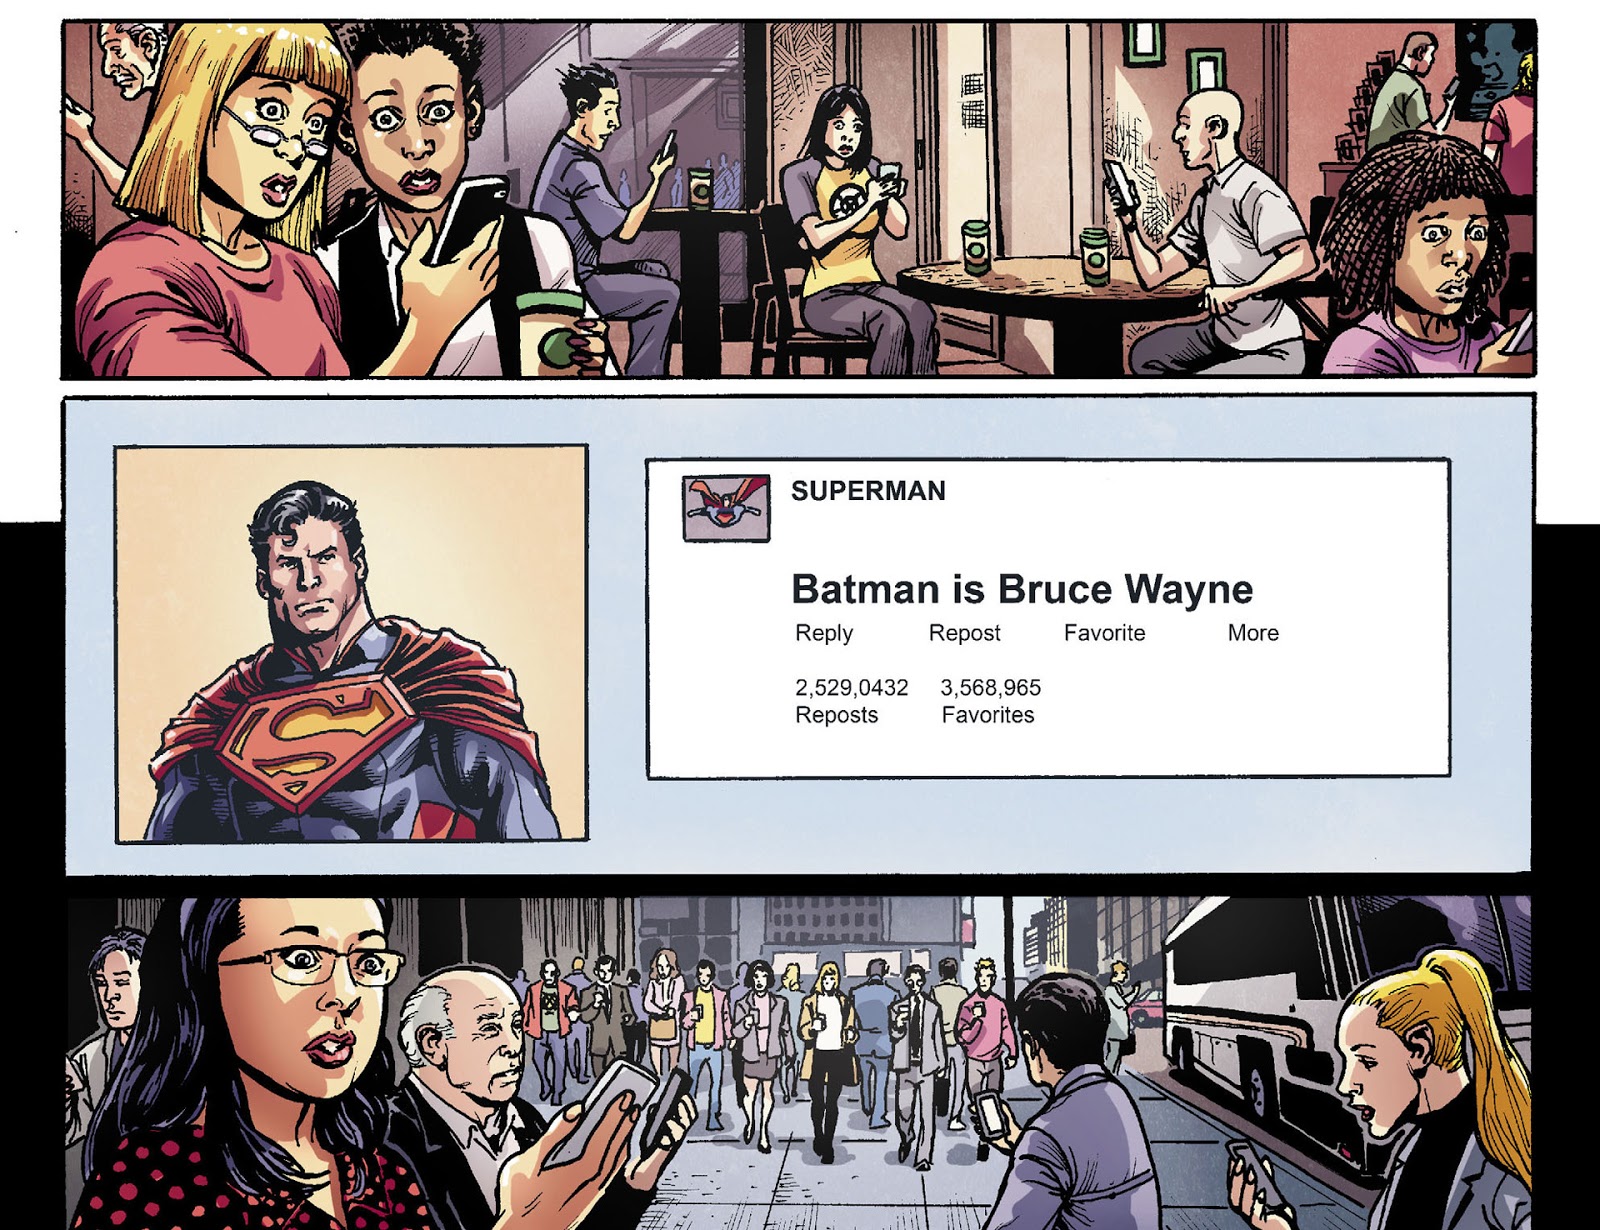 Superman twitta a identidade secreta de Batman em Injustice: Gods Among Us Vol. 1 #28 “Capítulo 28” (2013), DC Comics. Letras de Tom Taylor, arte de Tom Derenick, Santi Casas e David Lopez via edição digital